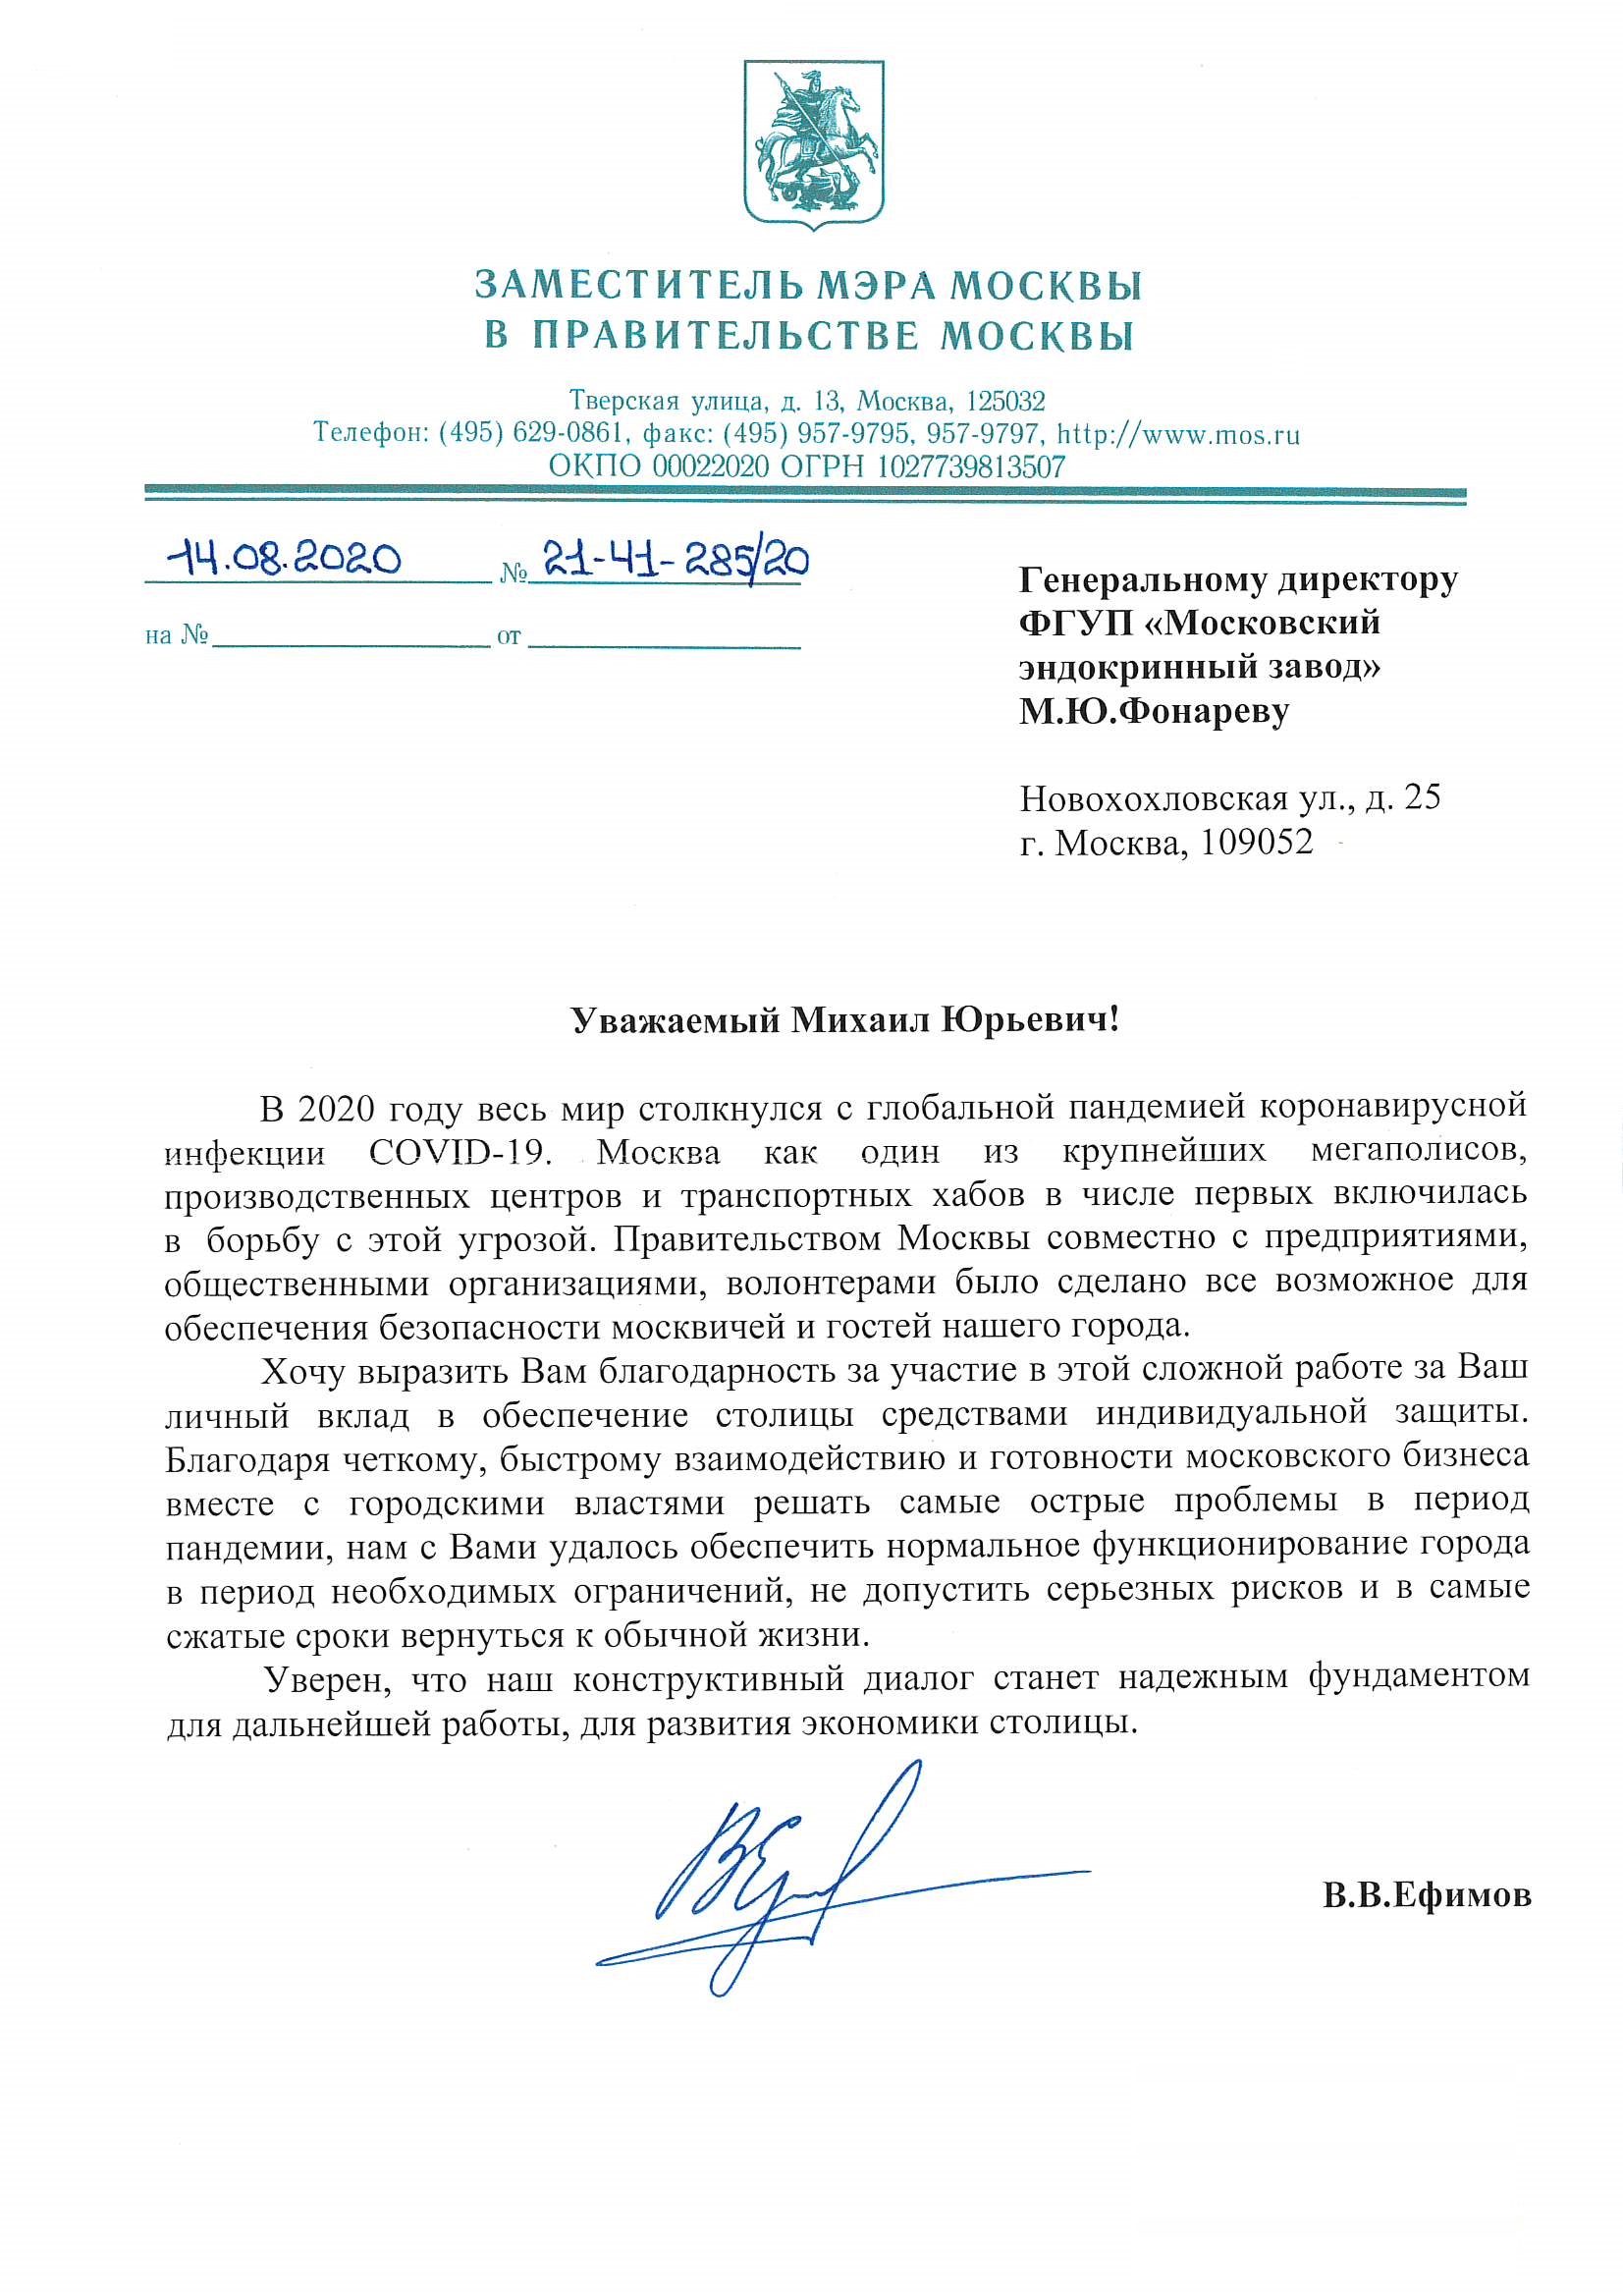 Правительство Москвы выразило благодарность коллективу ФГУП «Московский эндокринный завод» за личный вклад в обеспечение столицы средствами индивидуальной защиты.